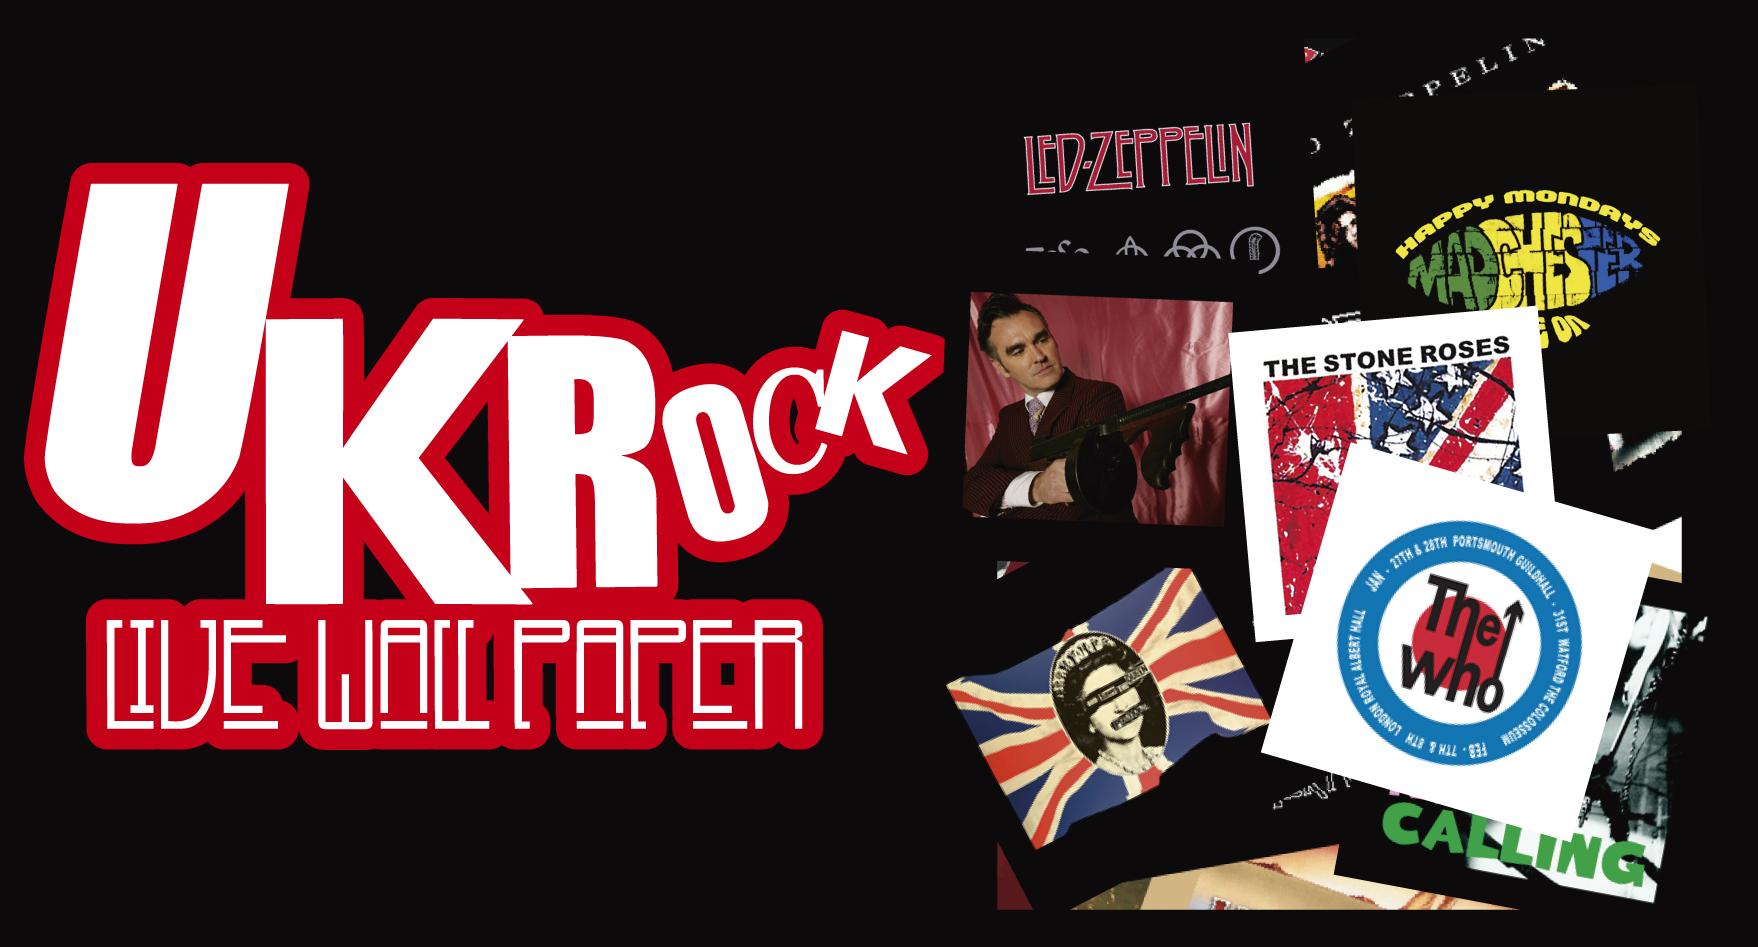 モリッシー The Who他英国ロックバンド全6タイトル スマートフォンアプリ Uk Rock Live Wall Paper シリーズ販売開始 ｉｃａのプレスリリース